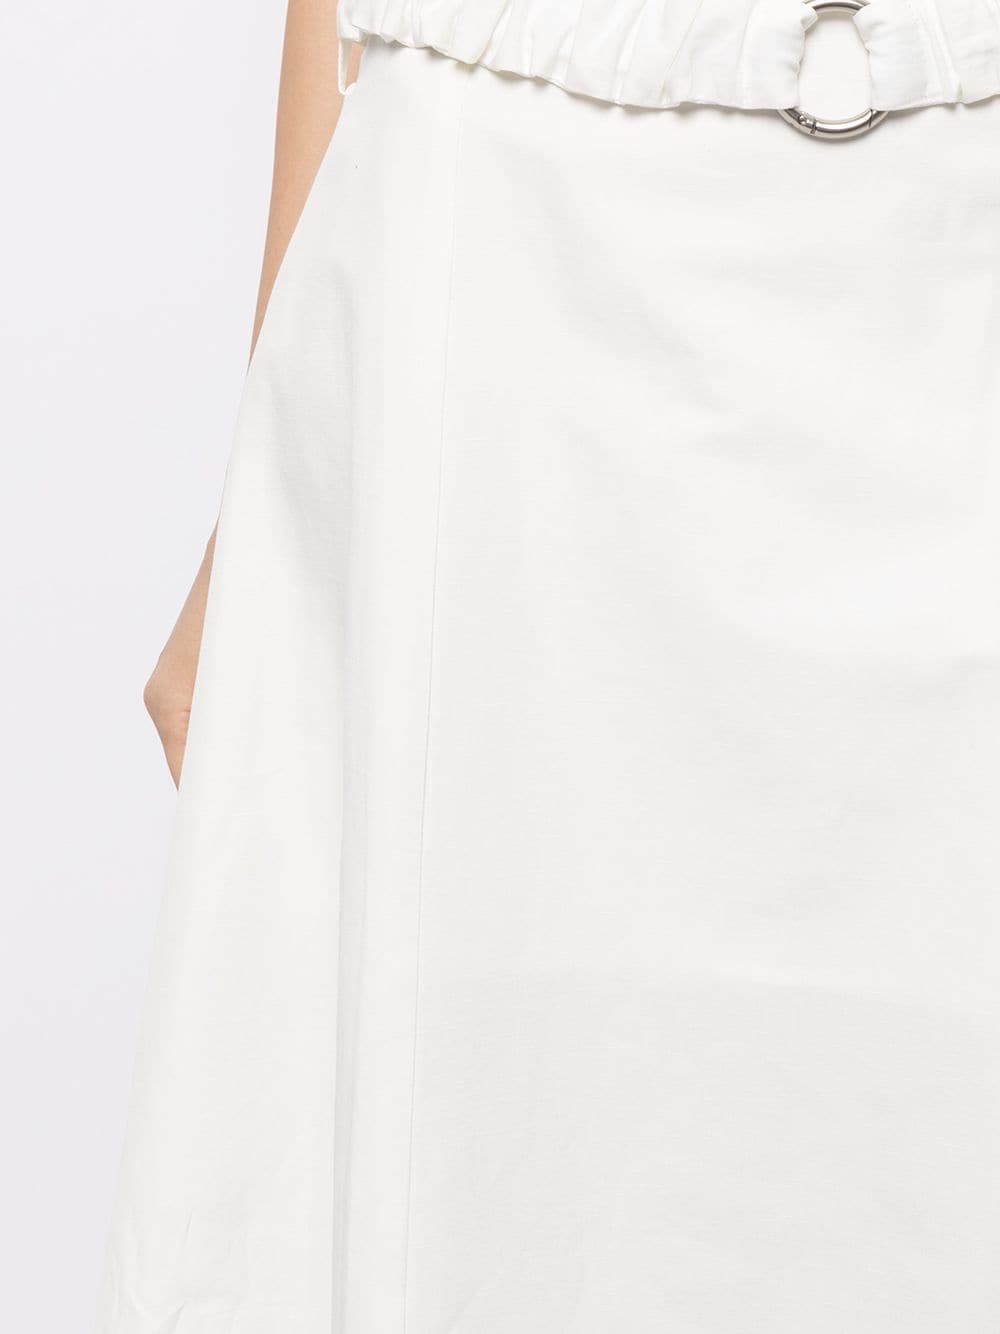 фото Eudon choi юбка с асимметричным подолом и поясом